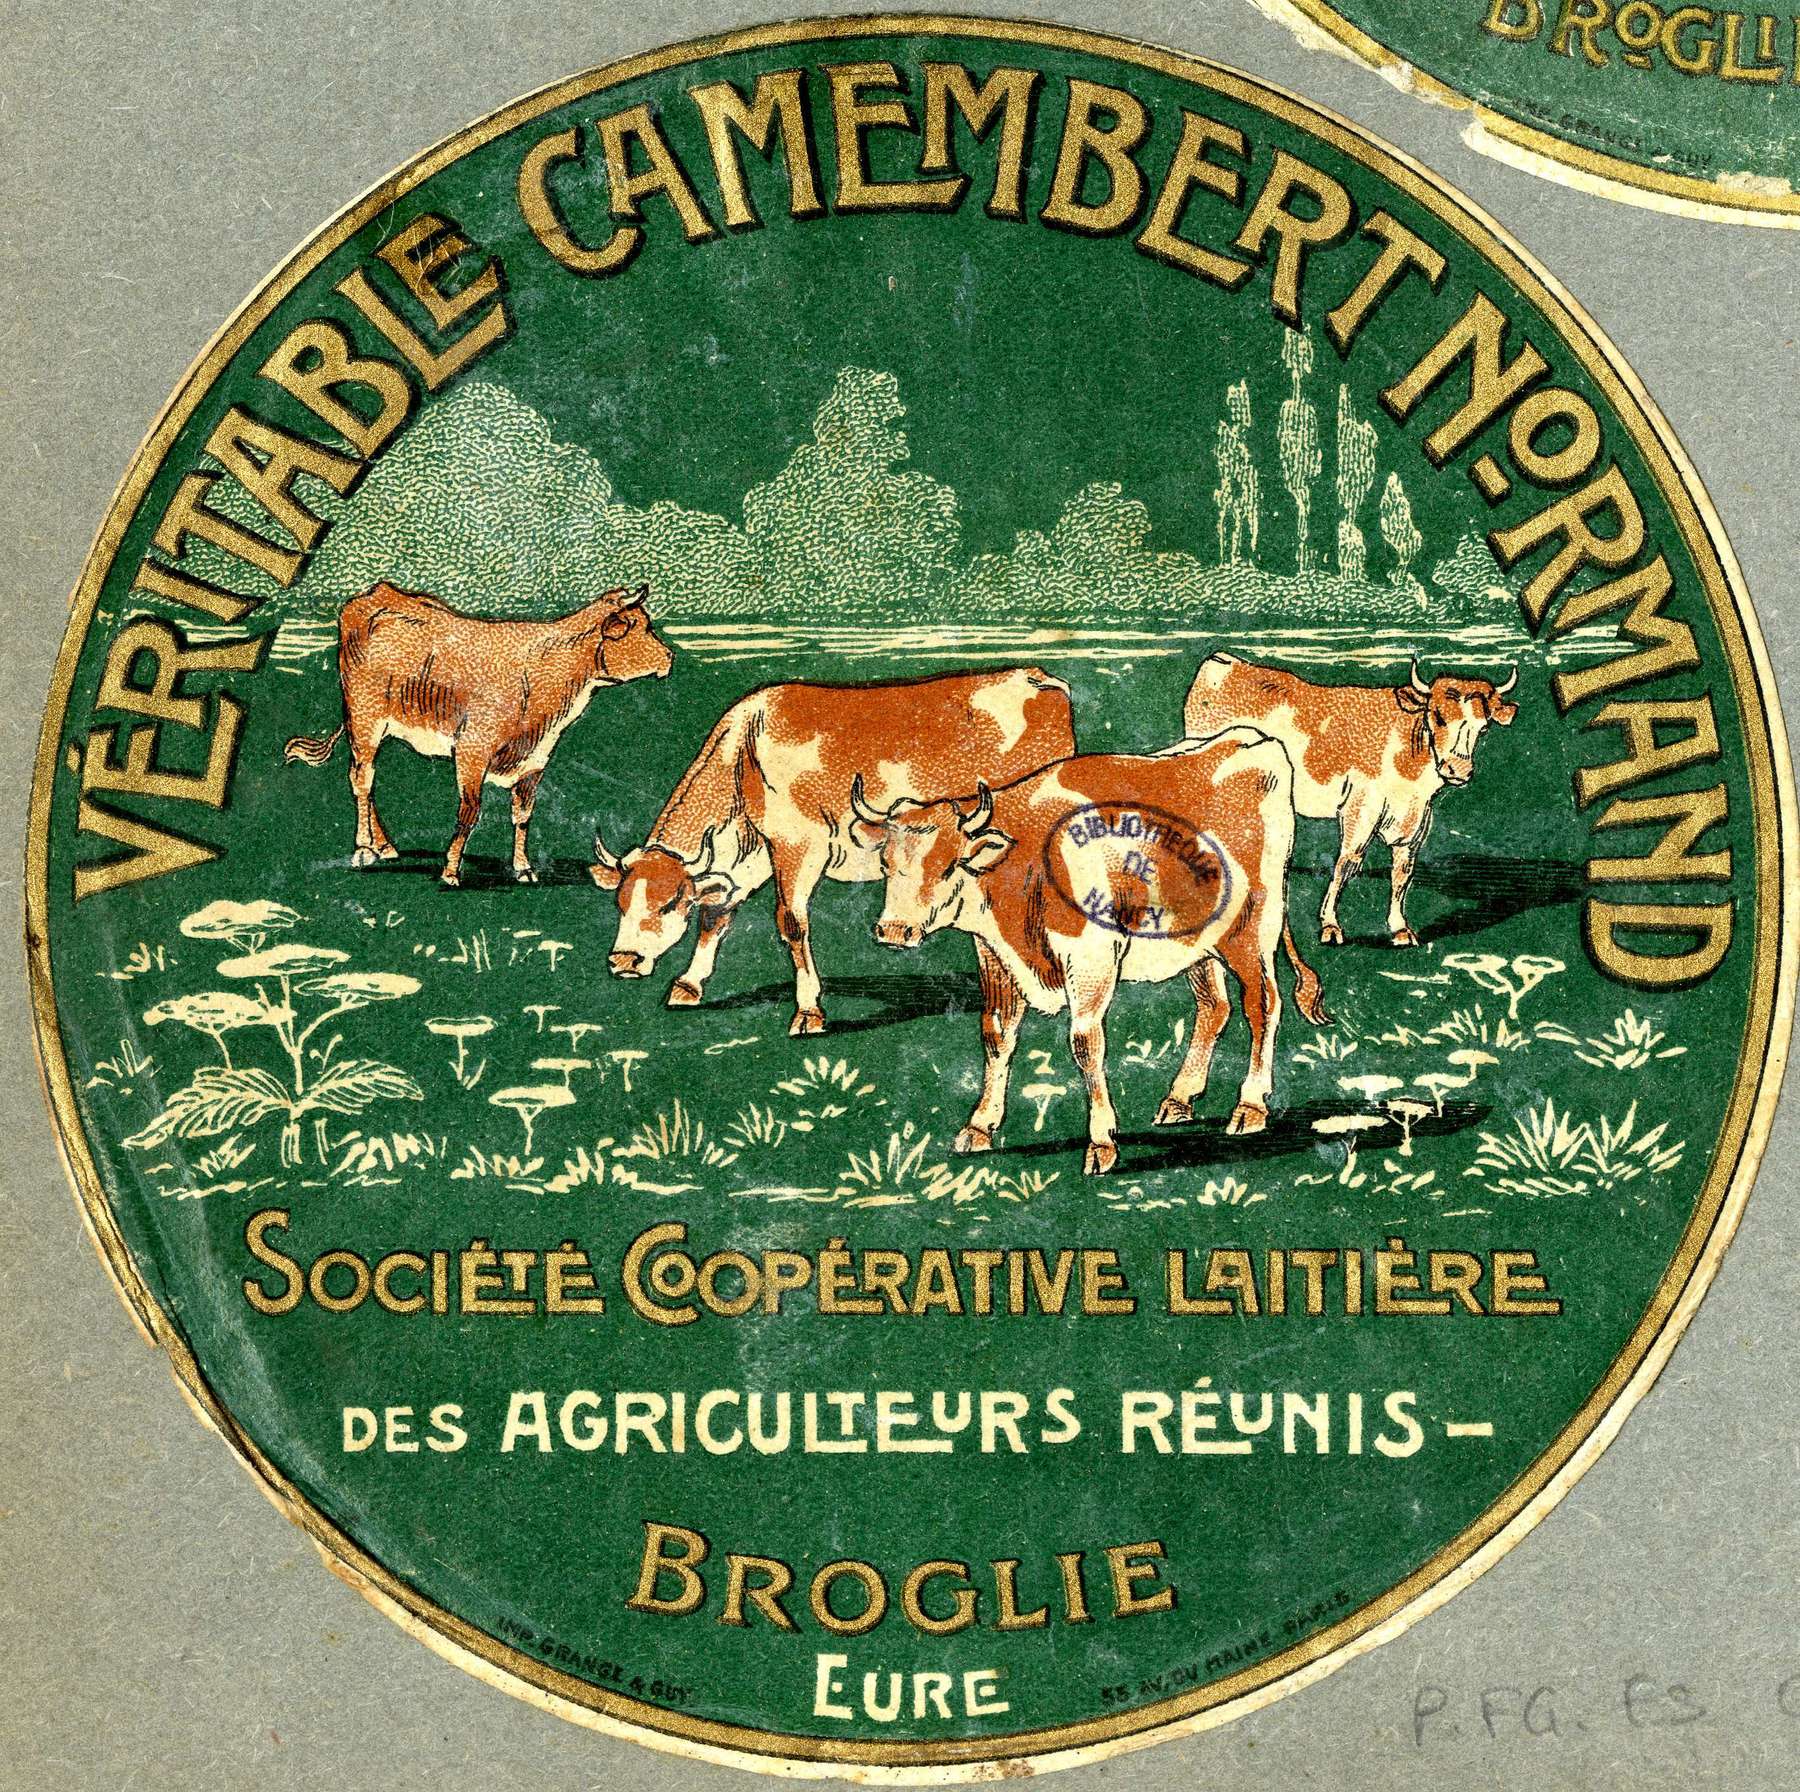 Contenu du Véritable camembert normand